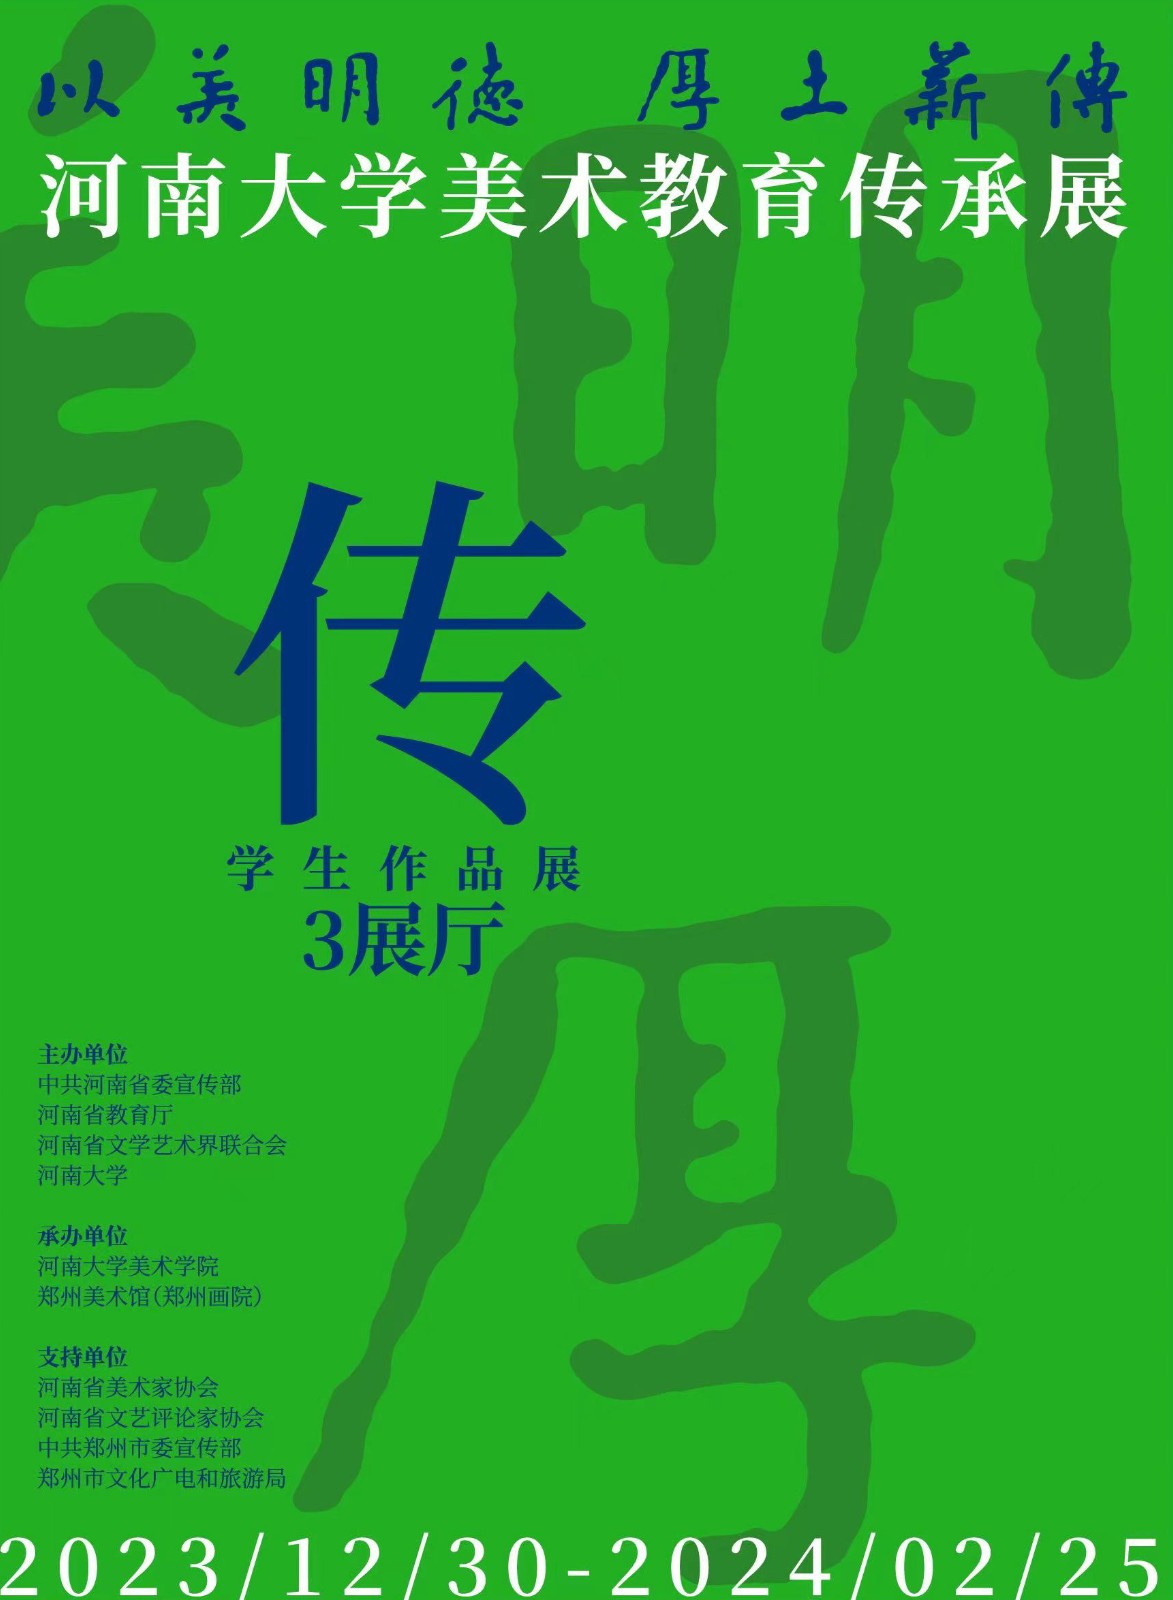 河南大学海报 第二张.jpg